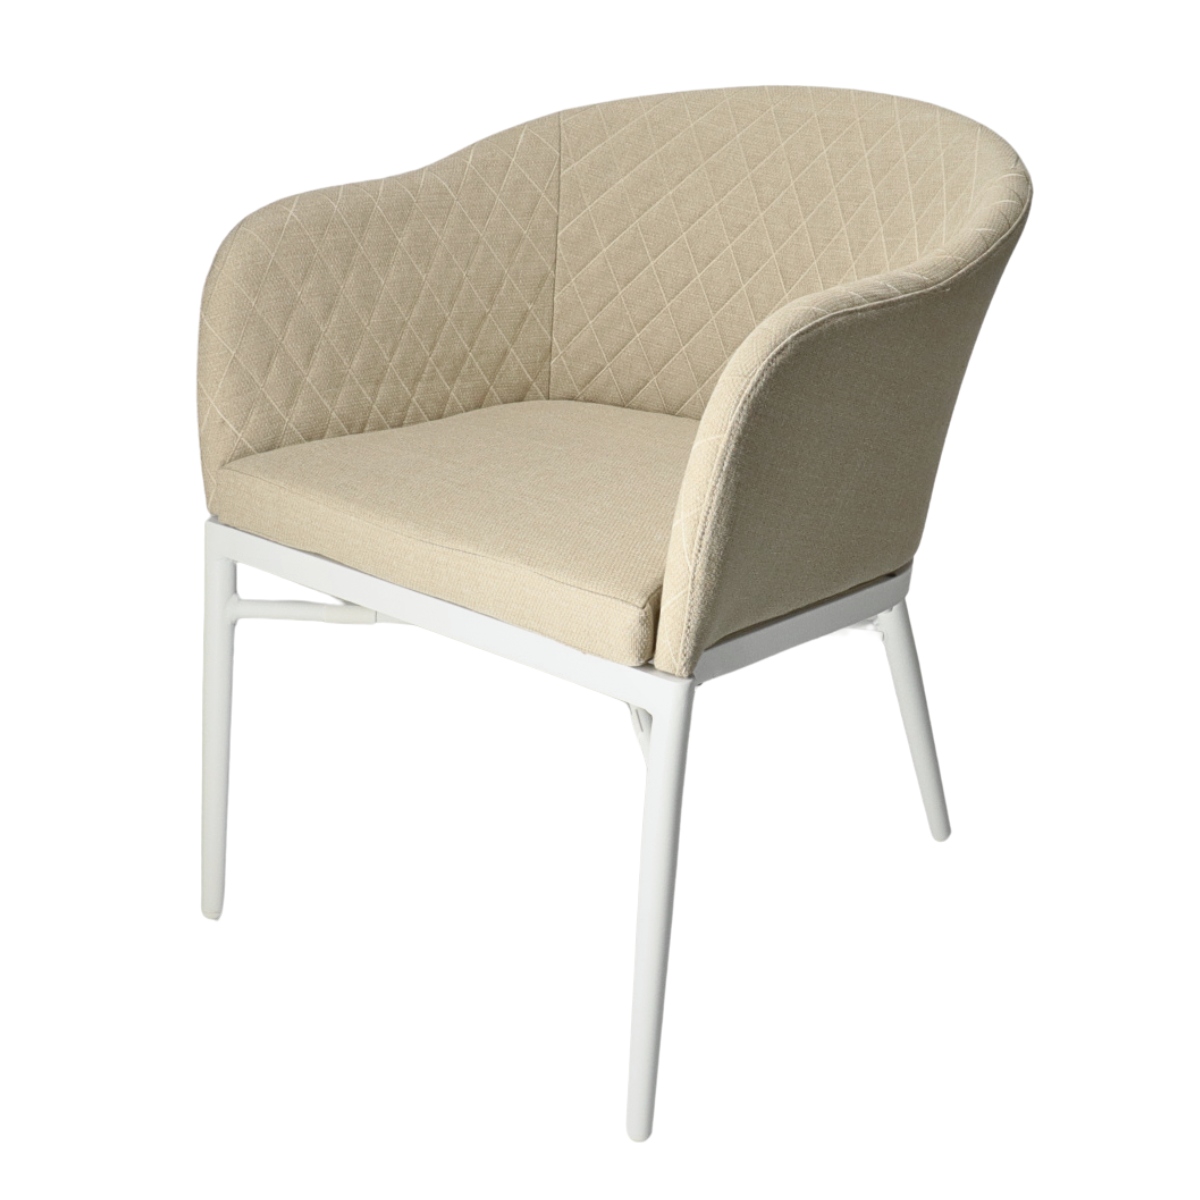 DL KORAT Fehér, Bézs design Vízlepergető szövetű szék